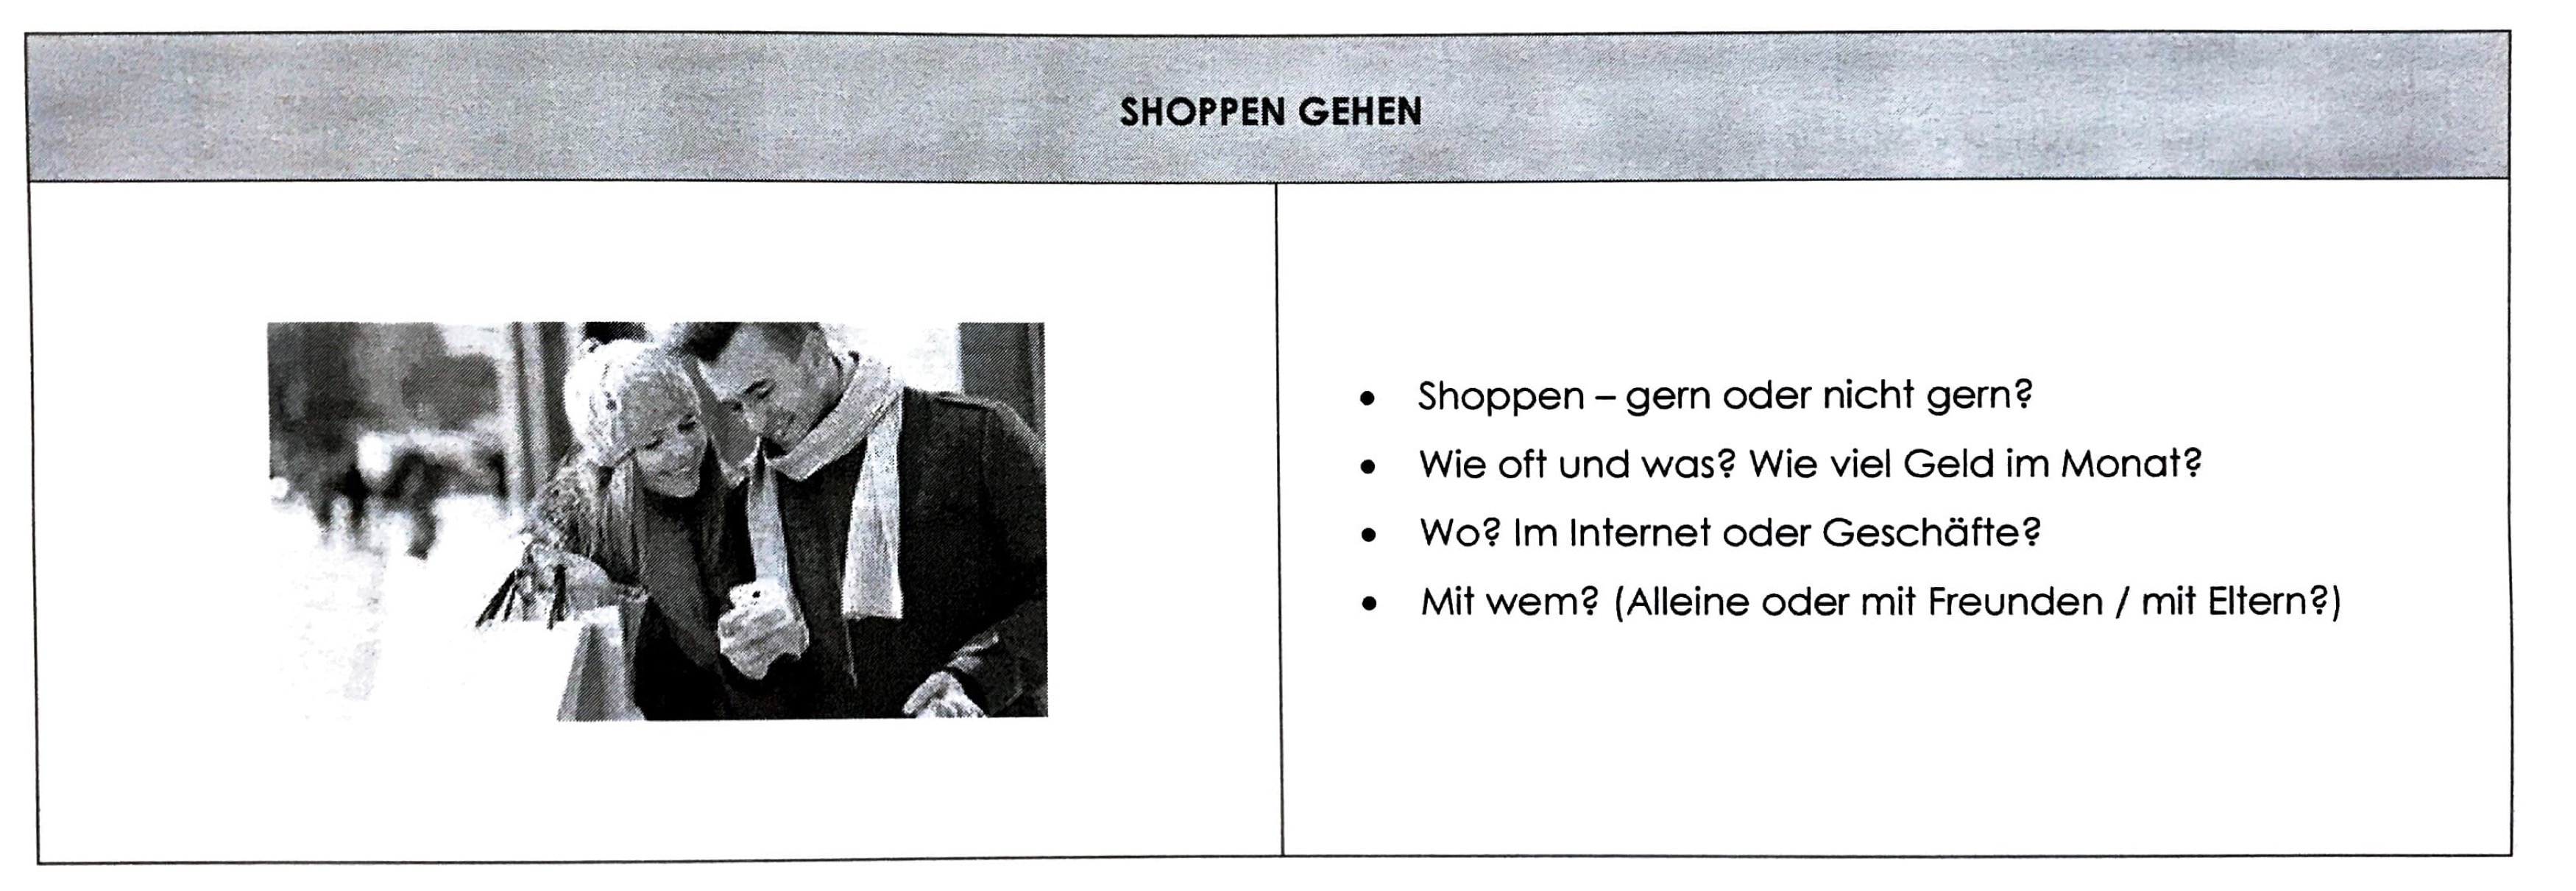 Shoppen19